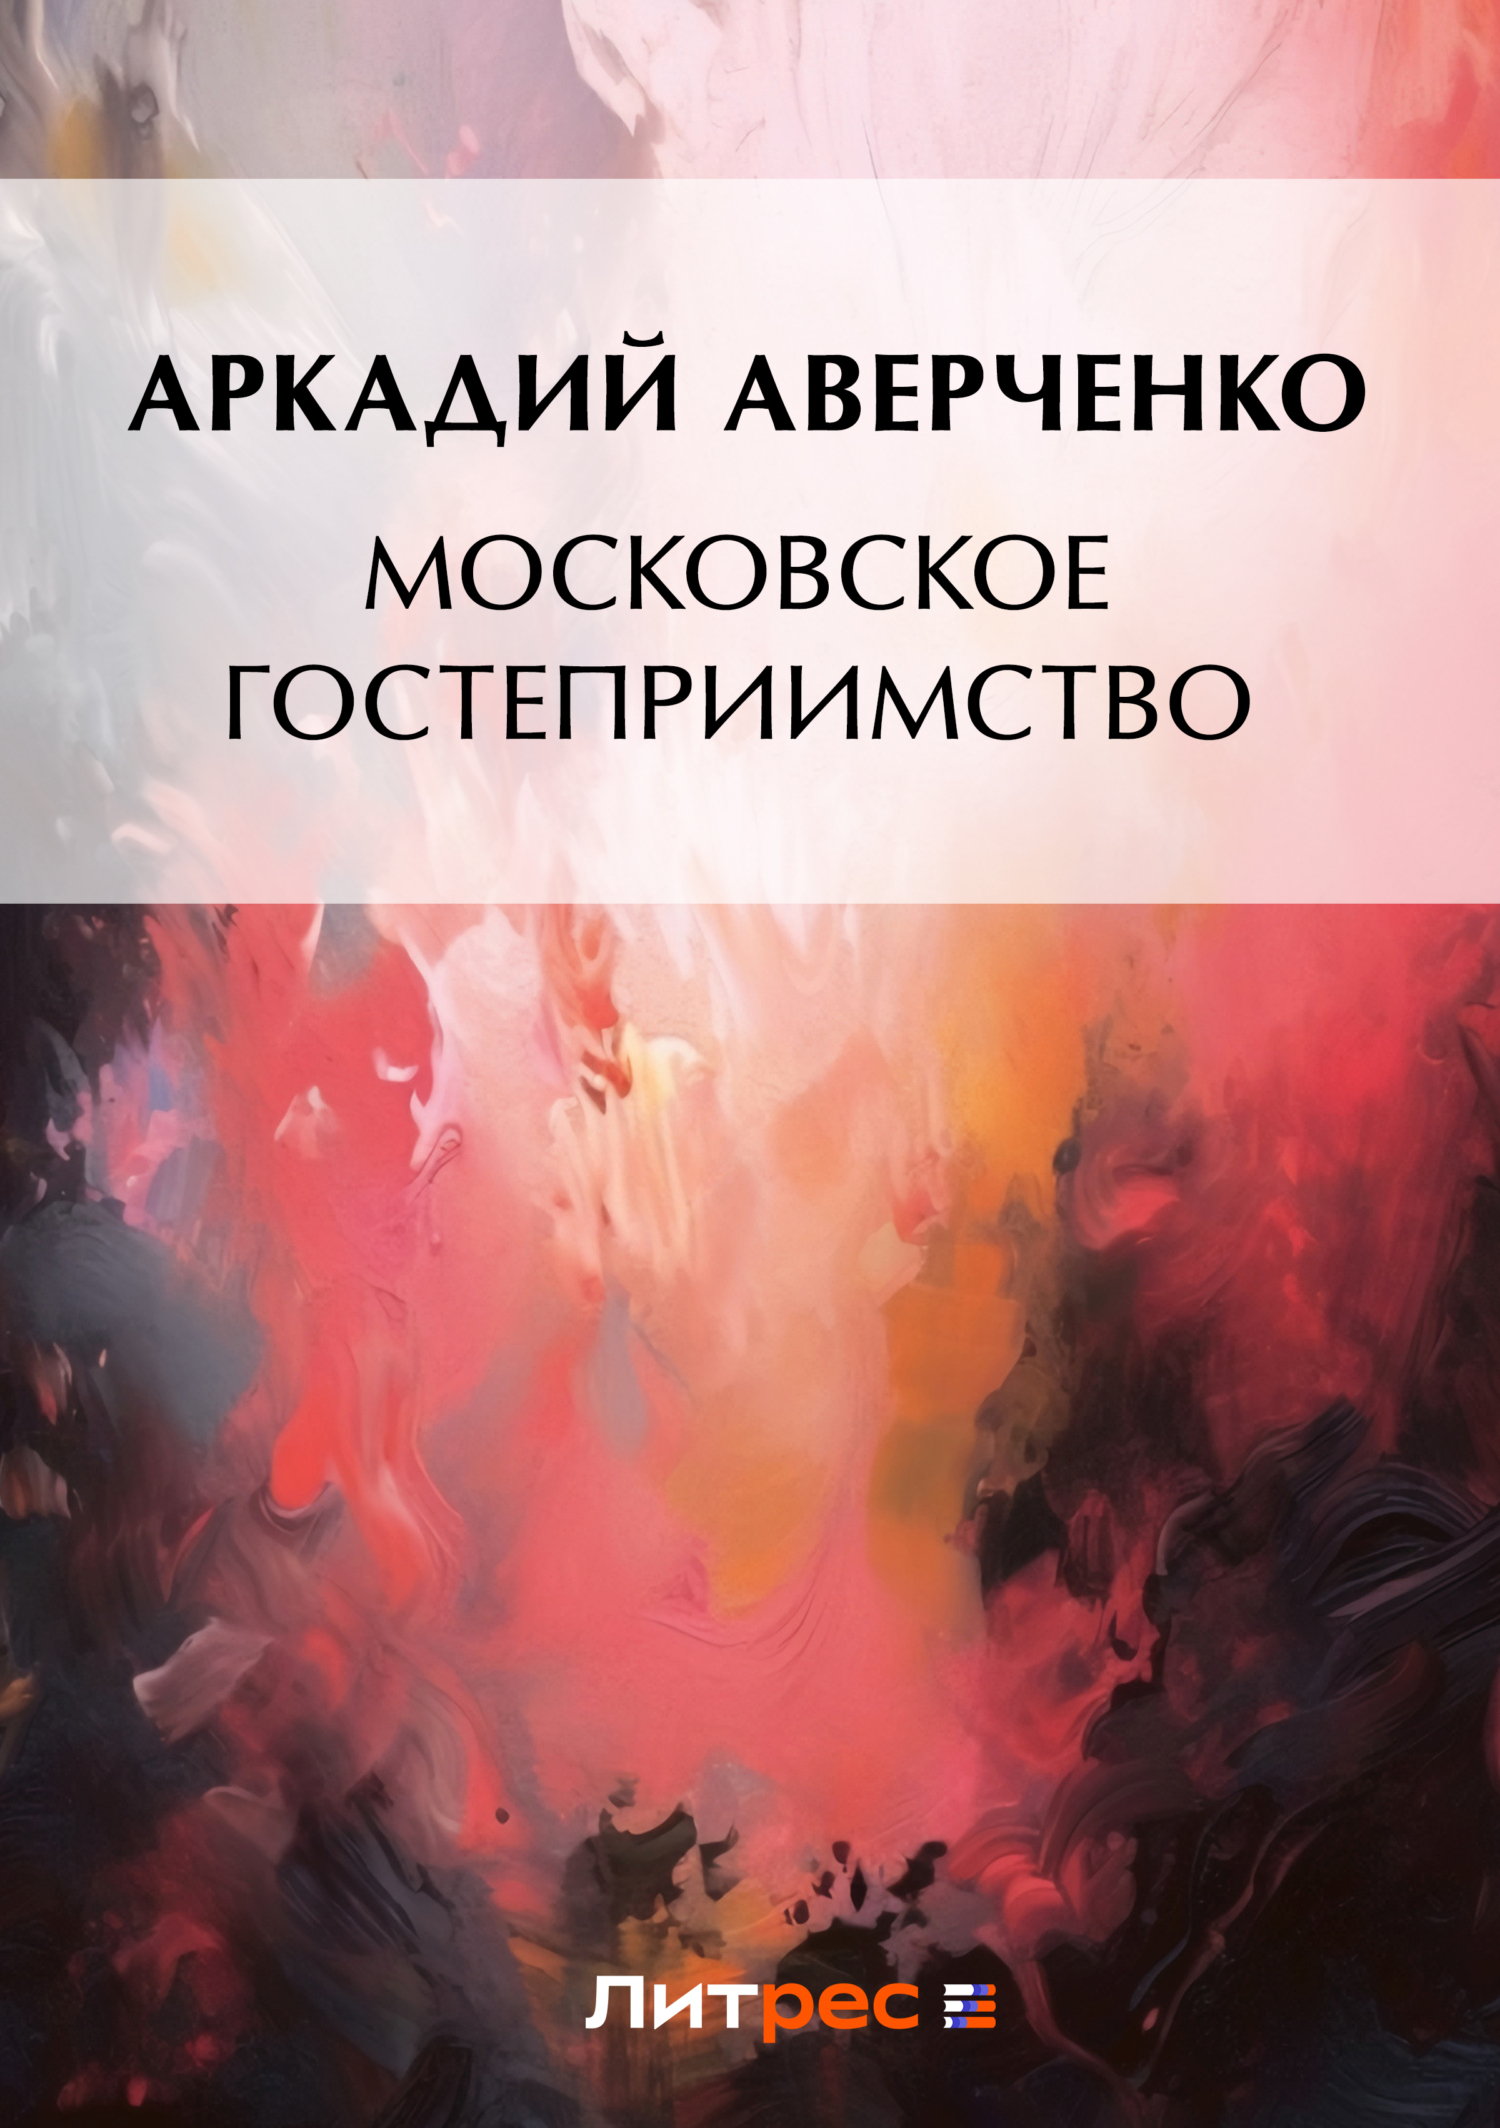 Книга Московское гостеприимство из серии , созданная Аркадий Аверченко, может относится к жанру Литература 20 века, Советская литература. Стоимость электронной книги Московское гостеприимство с идентификатором 49675494 составляет 5.99 руб.